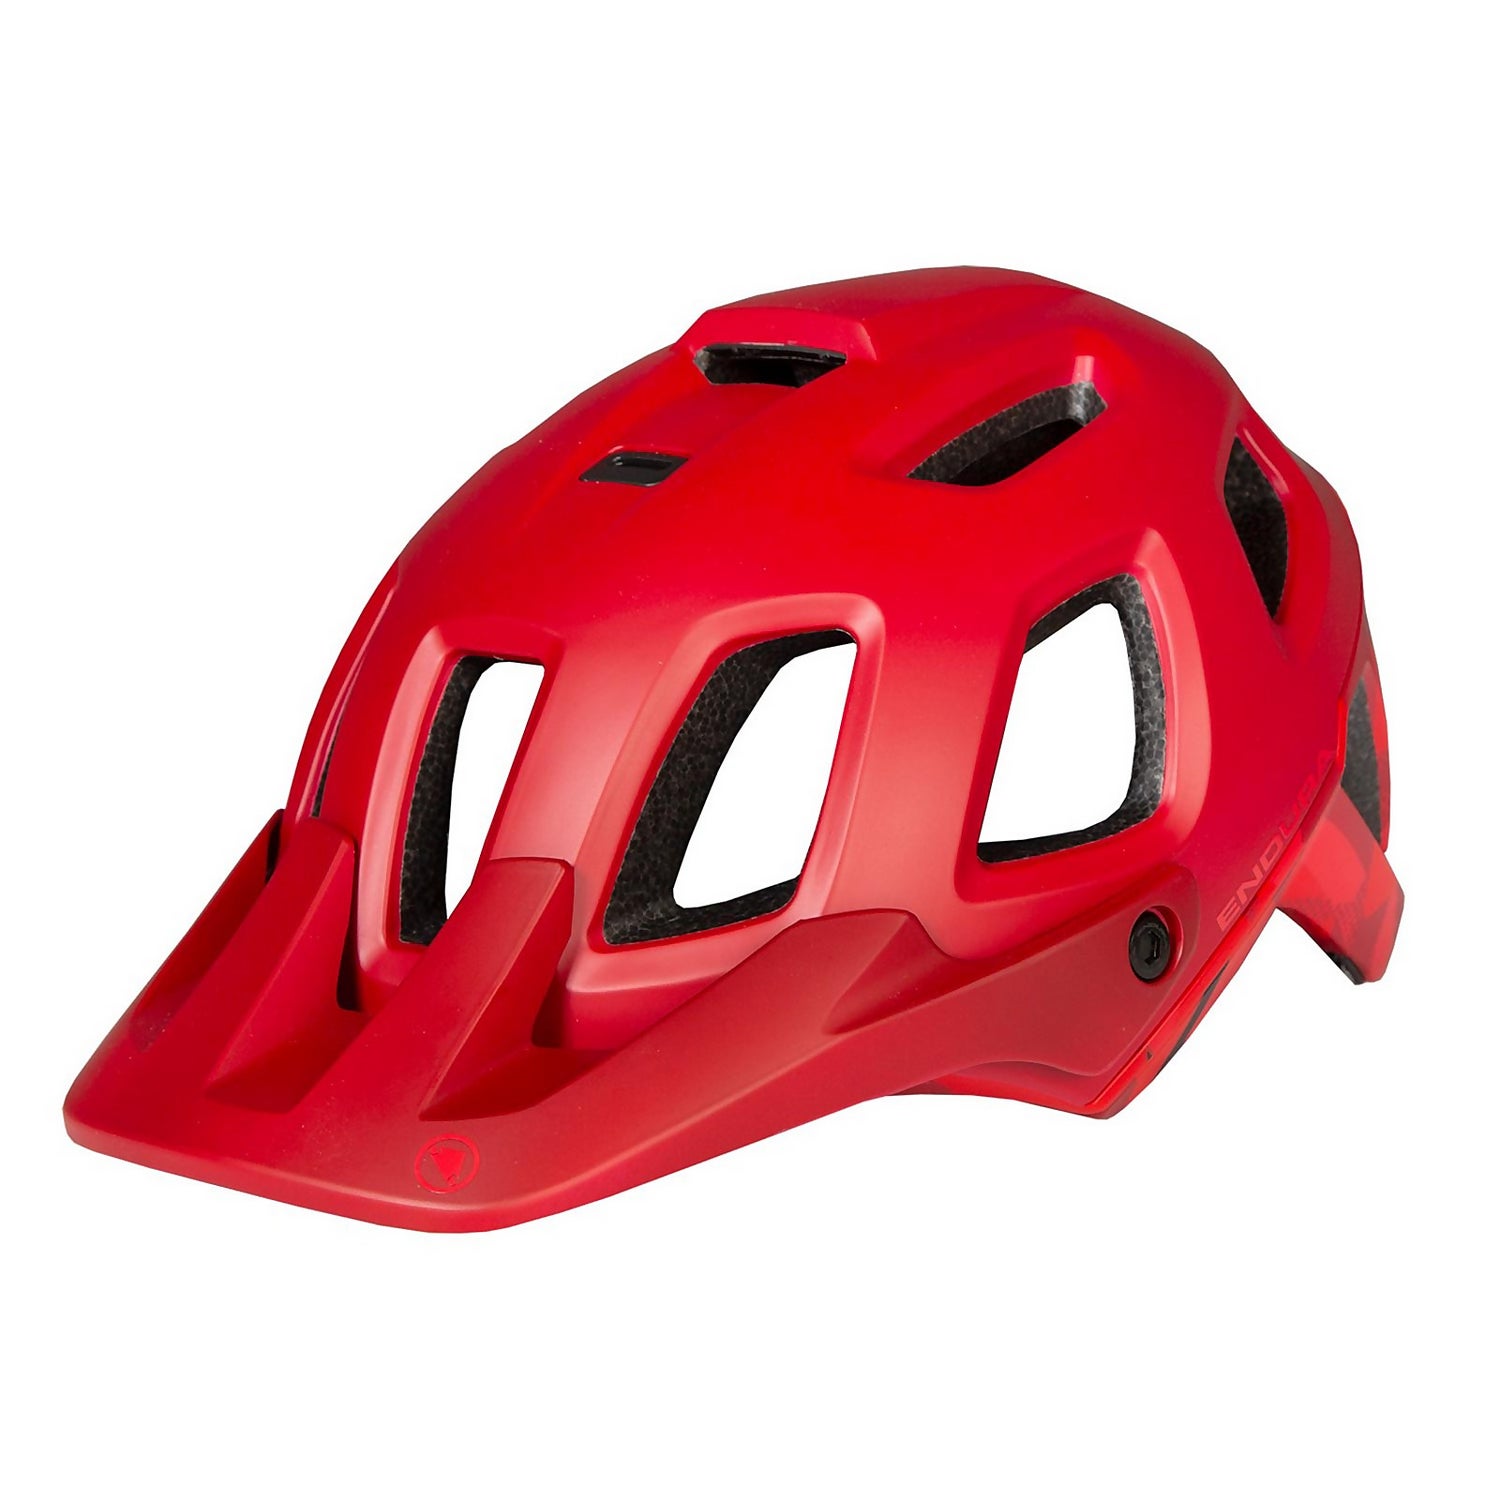 SingleTrack Helmet II - Rust Red